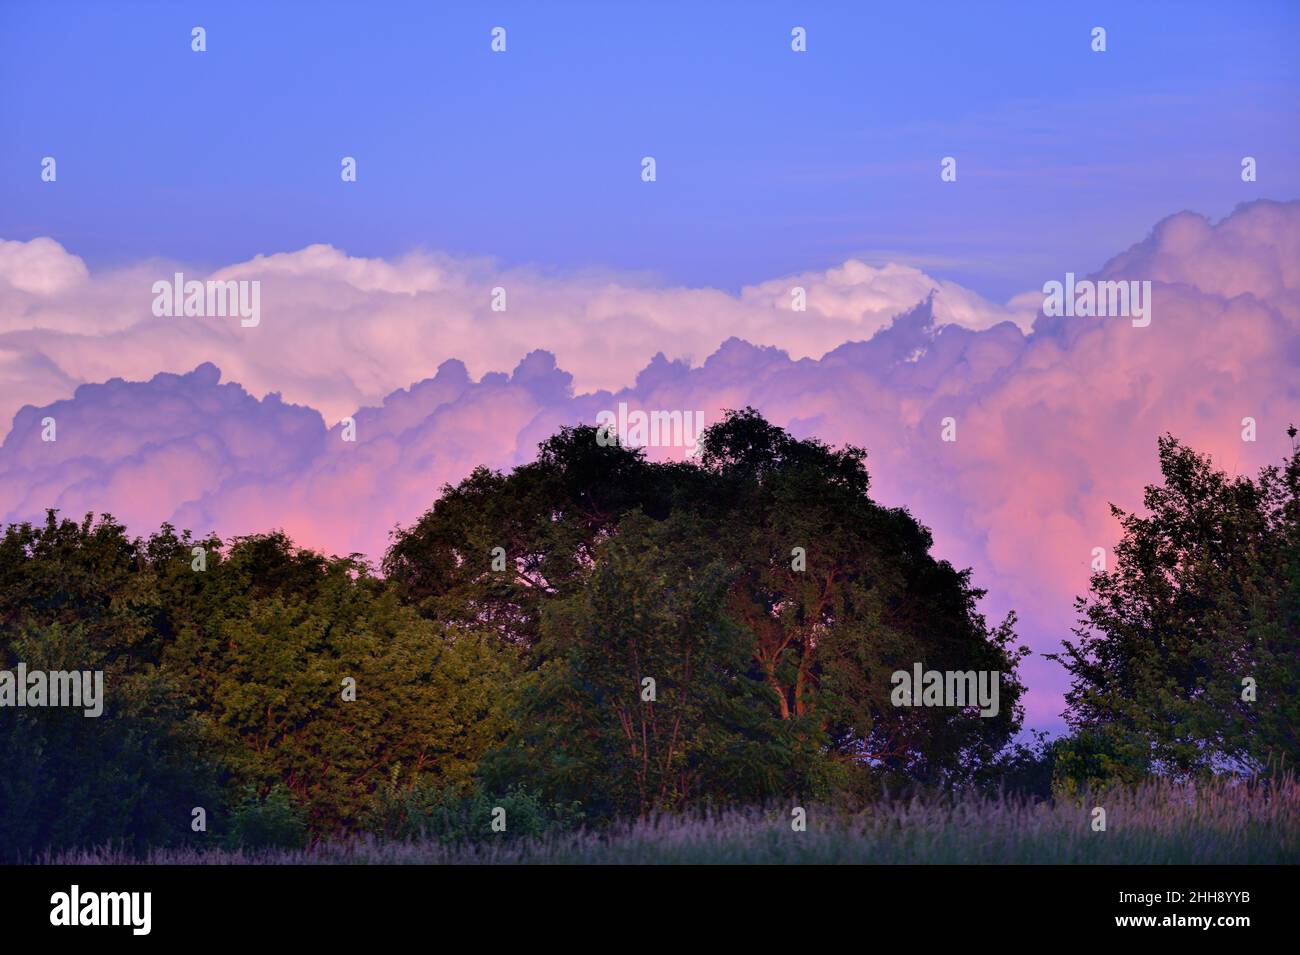 Bartlett, Illinois, USA. Schichten angesammelter Wolken am späten Nachmittag spiegeln an einem späten Frühlingsabend das Licht eines farbenfrohen Sonnenuntergangs wider. Stockfoto